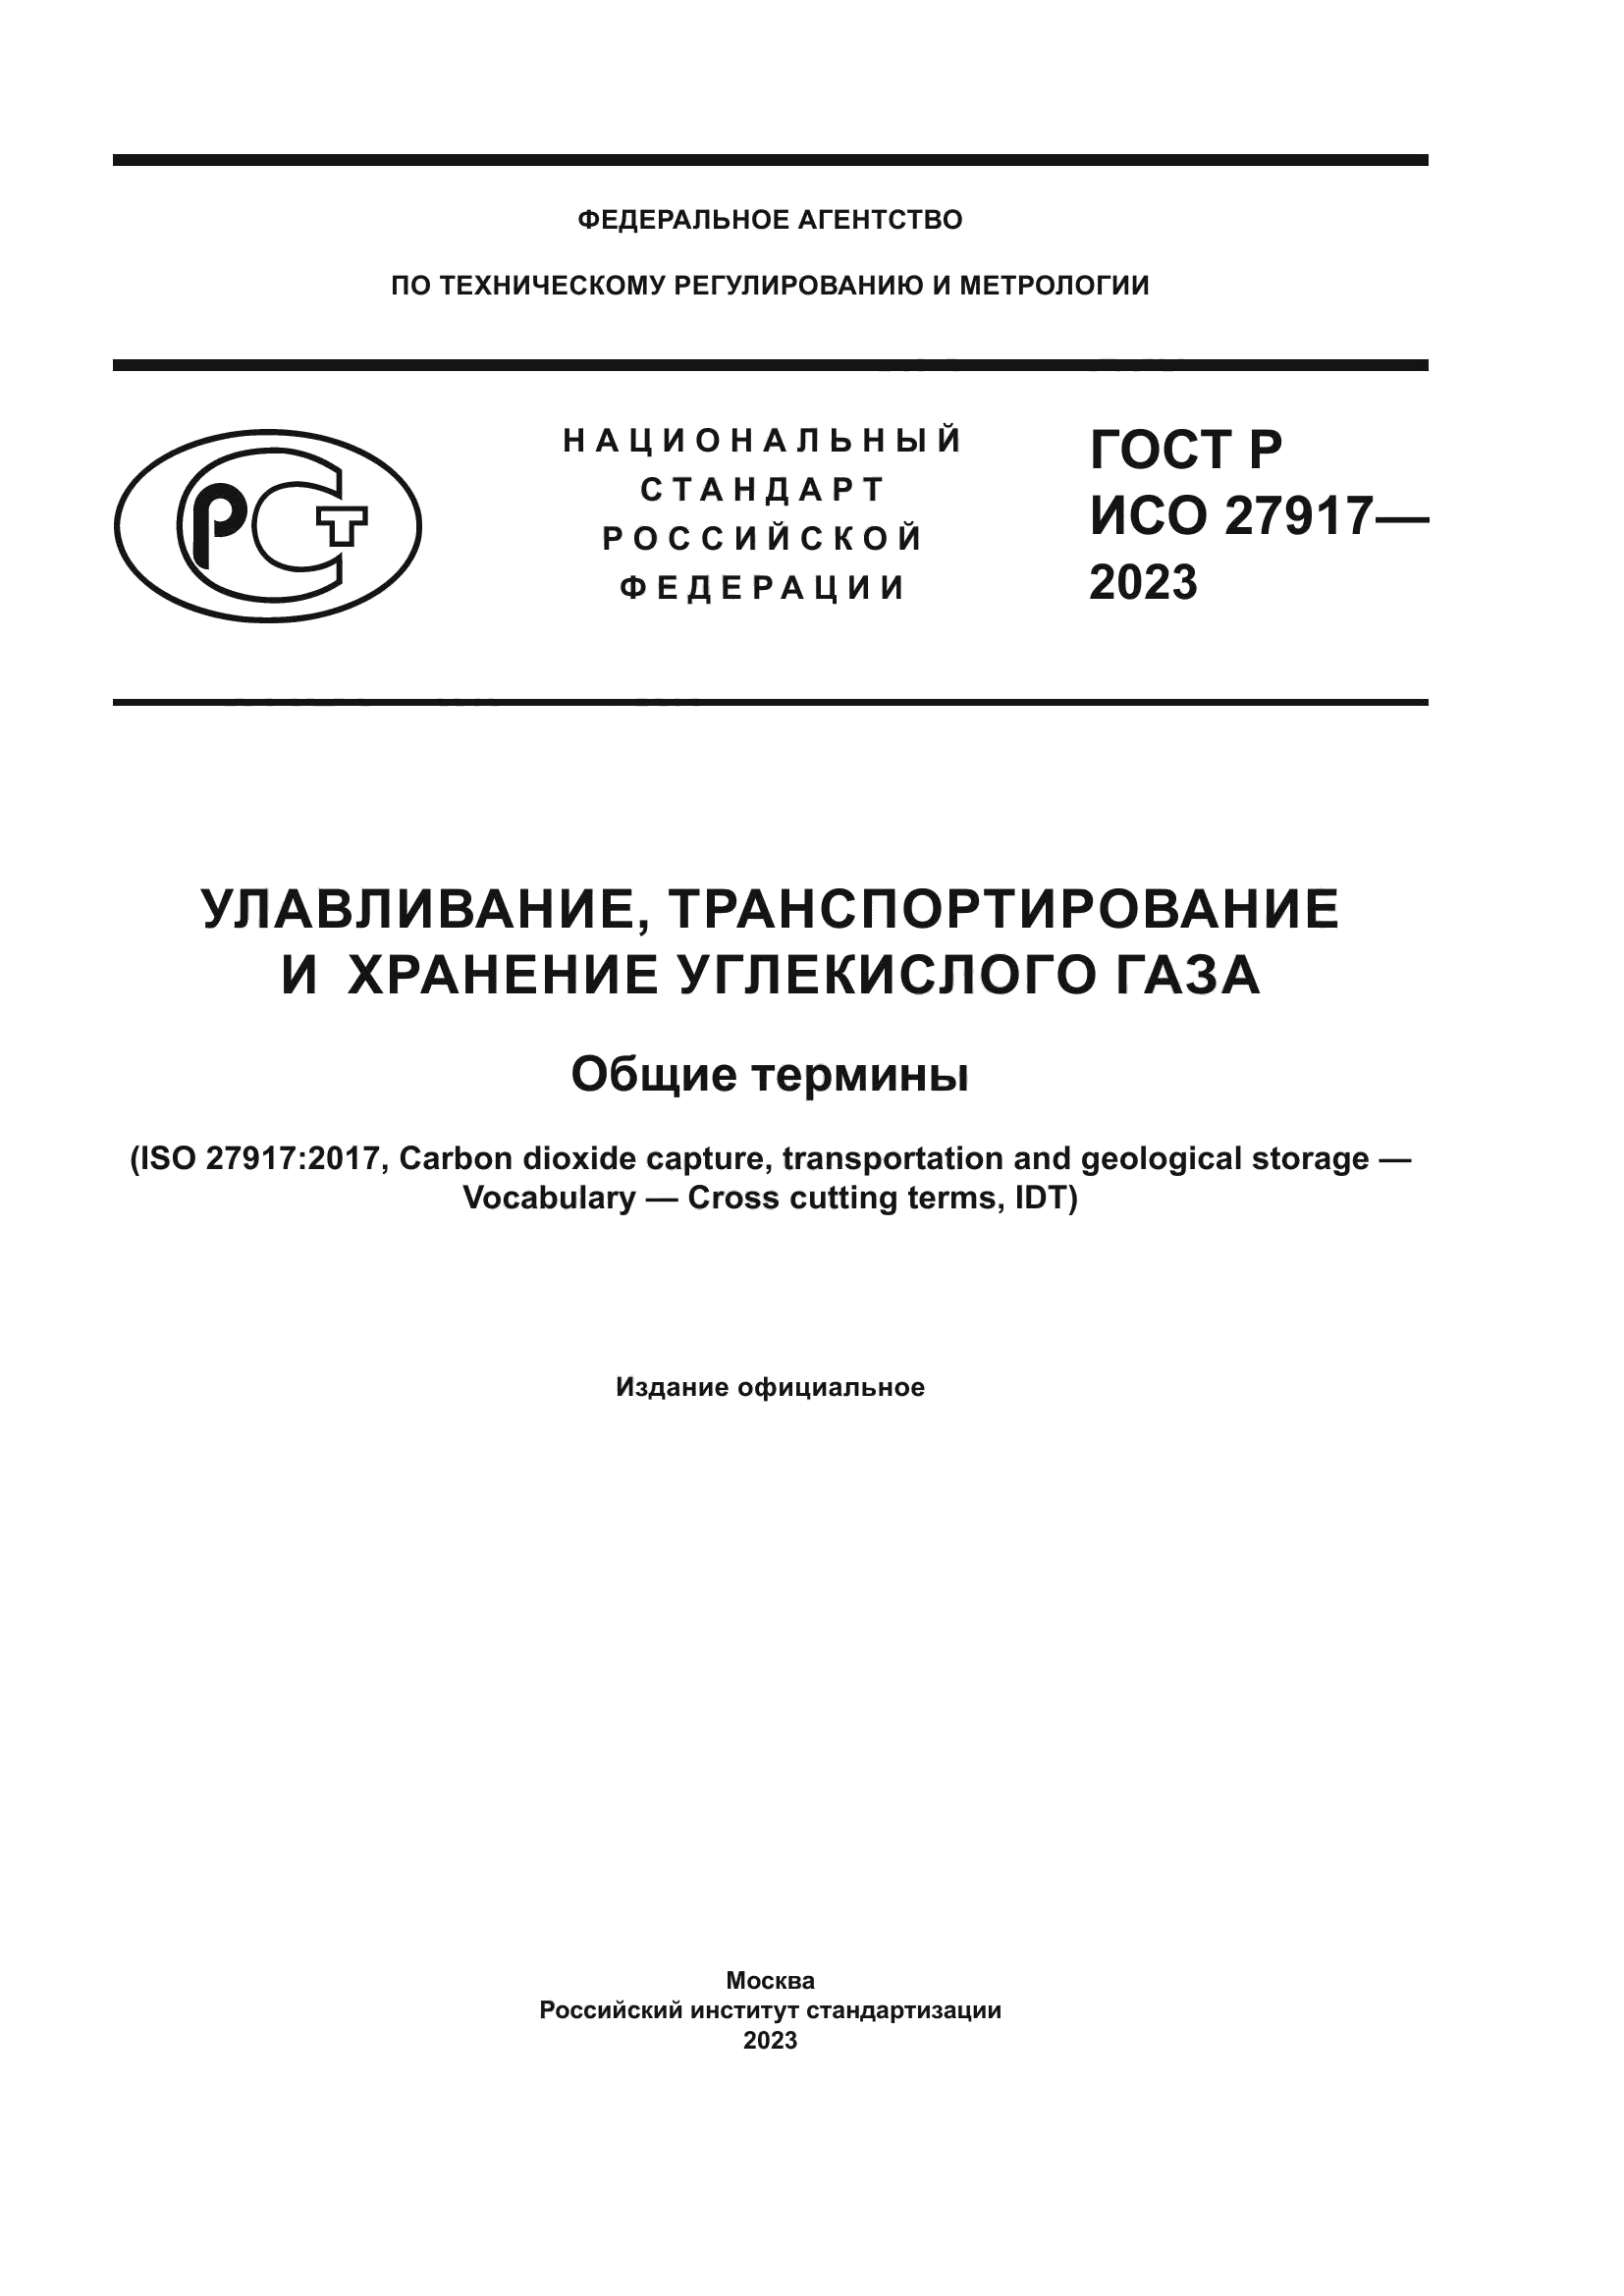 ГОСТ Р ИСО 27917-2023